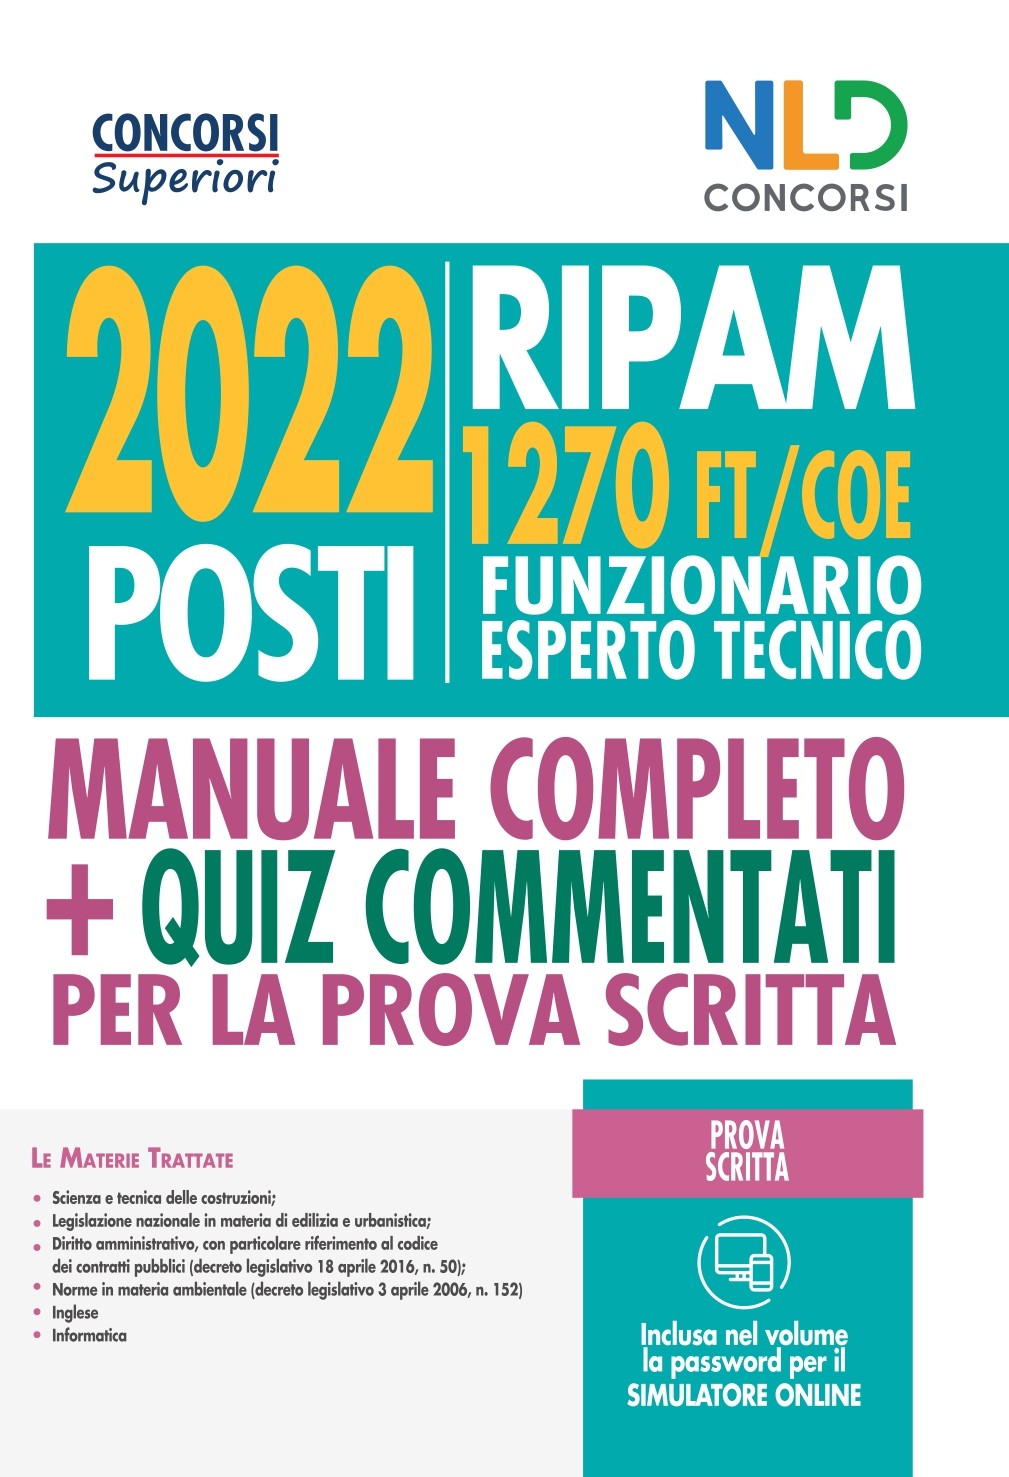 Concorso 2022 Posti Ripam: Manuale 1270 Posti Funzionari Esperti Tecnici FT/COE